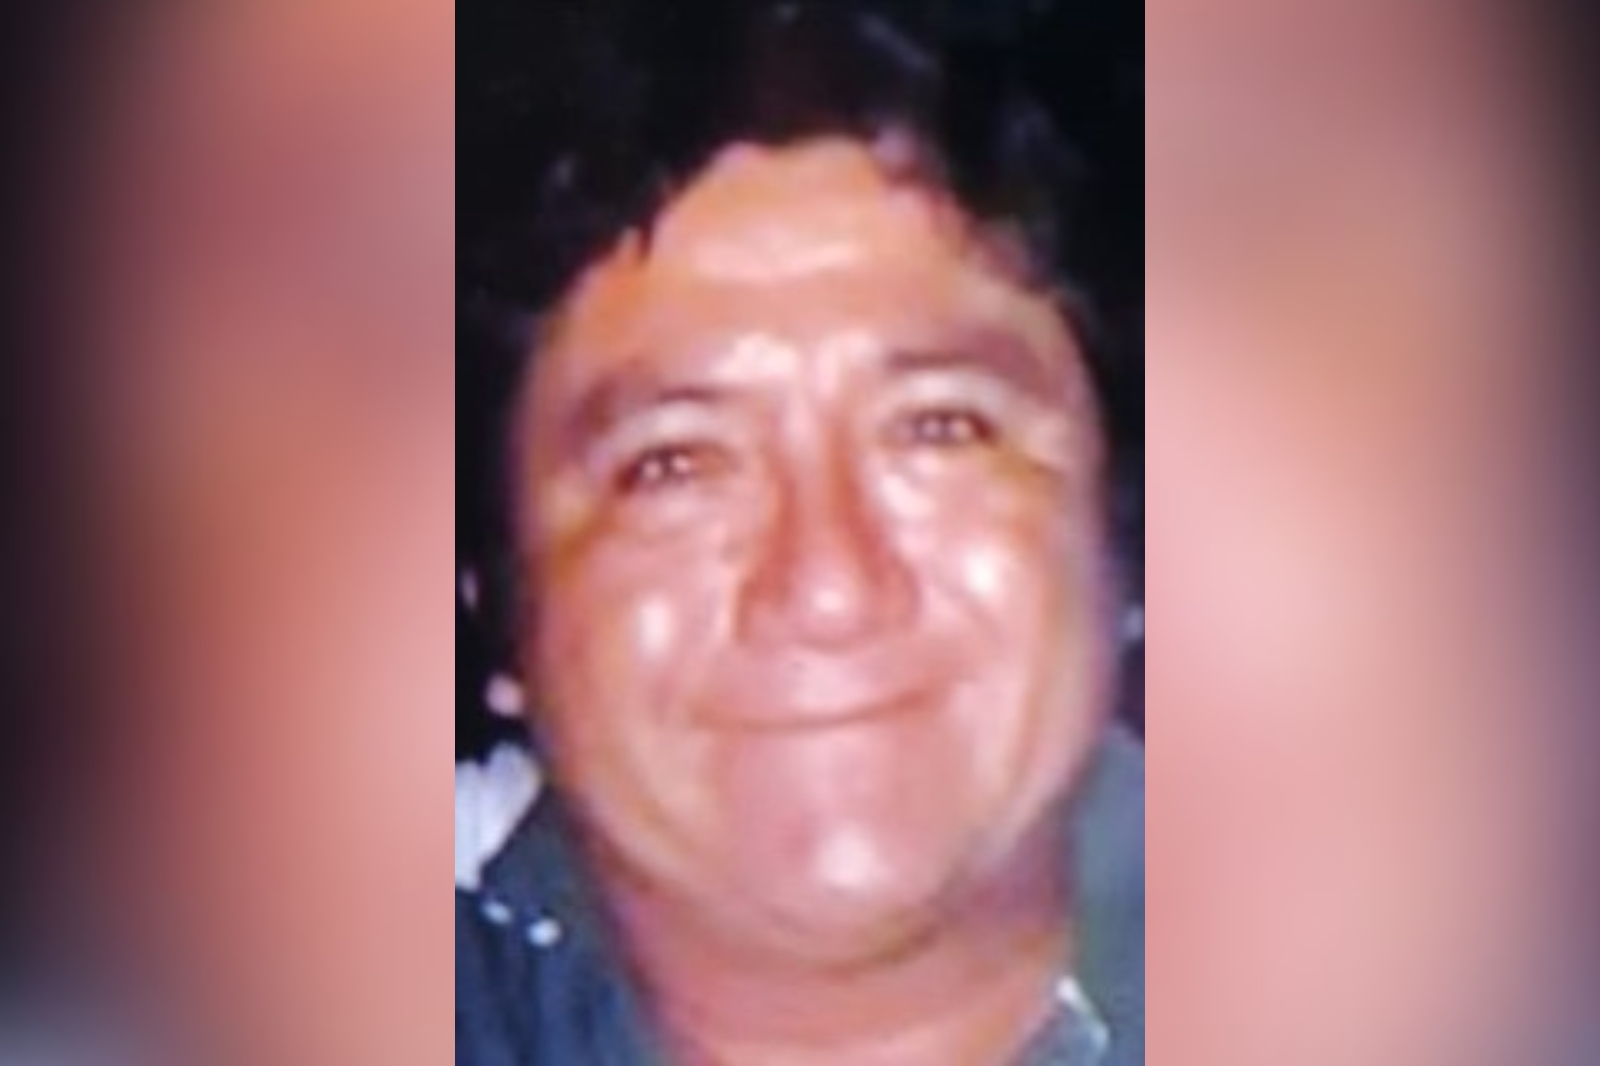 Activan ficha de búsqueda tras desaparición de William Madera Hernández en Cancún